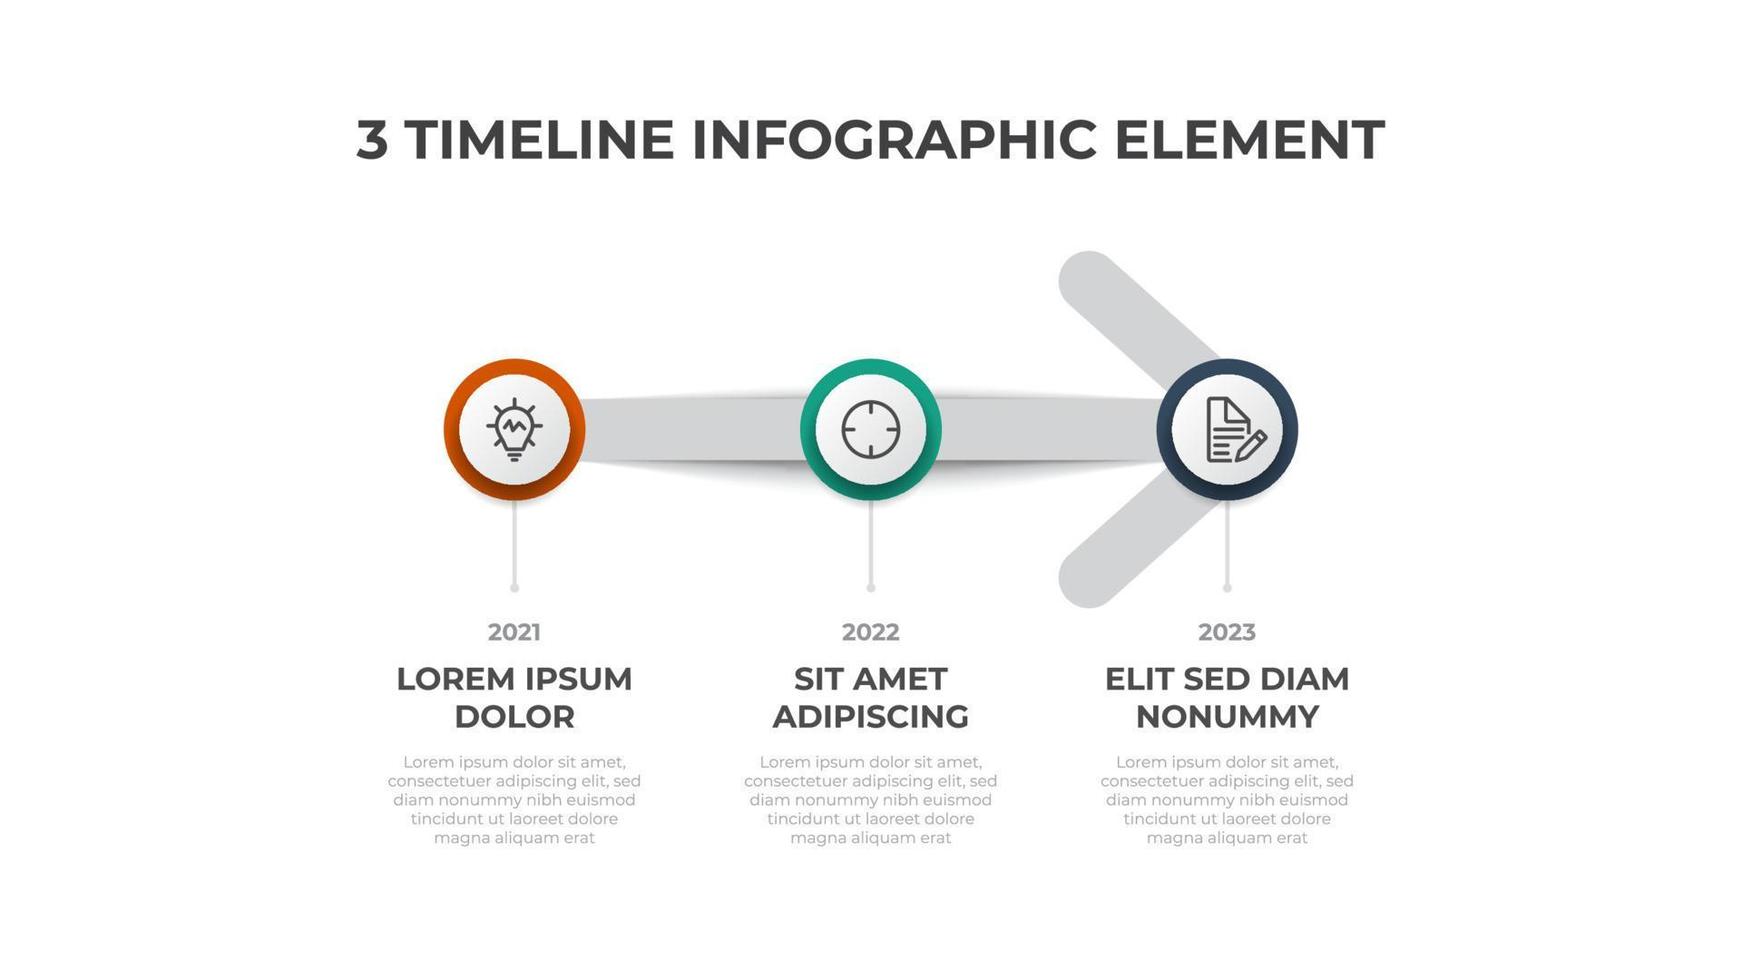 infographic element vector met 3 opties, lijst, en pijl, kan worden gebruikt voor tijdlijn, werkstroom, werkwijze diagram, presentatie, enz.